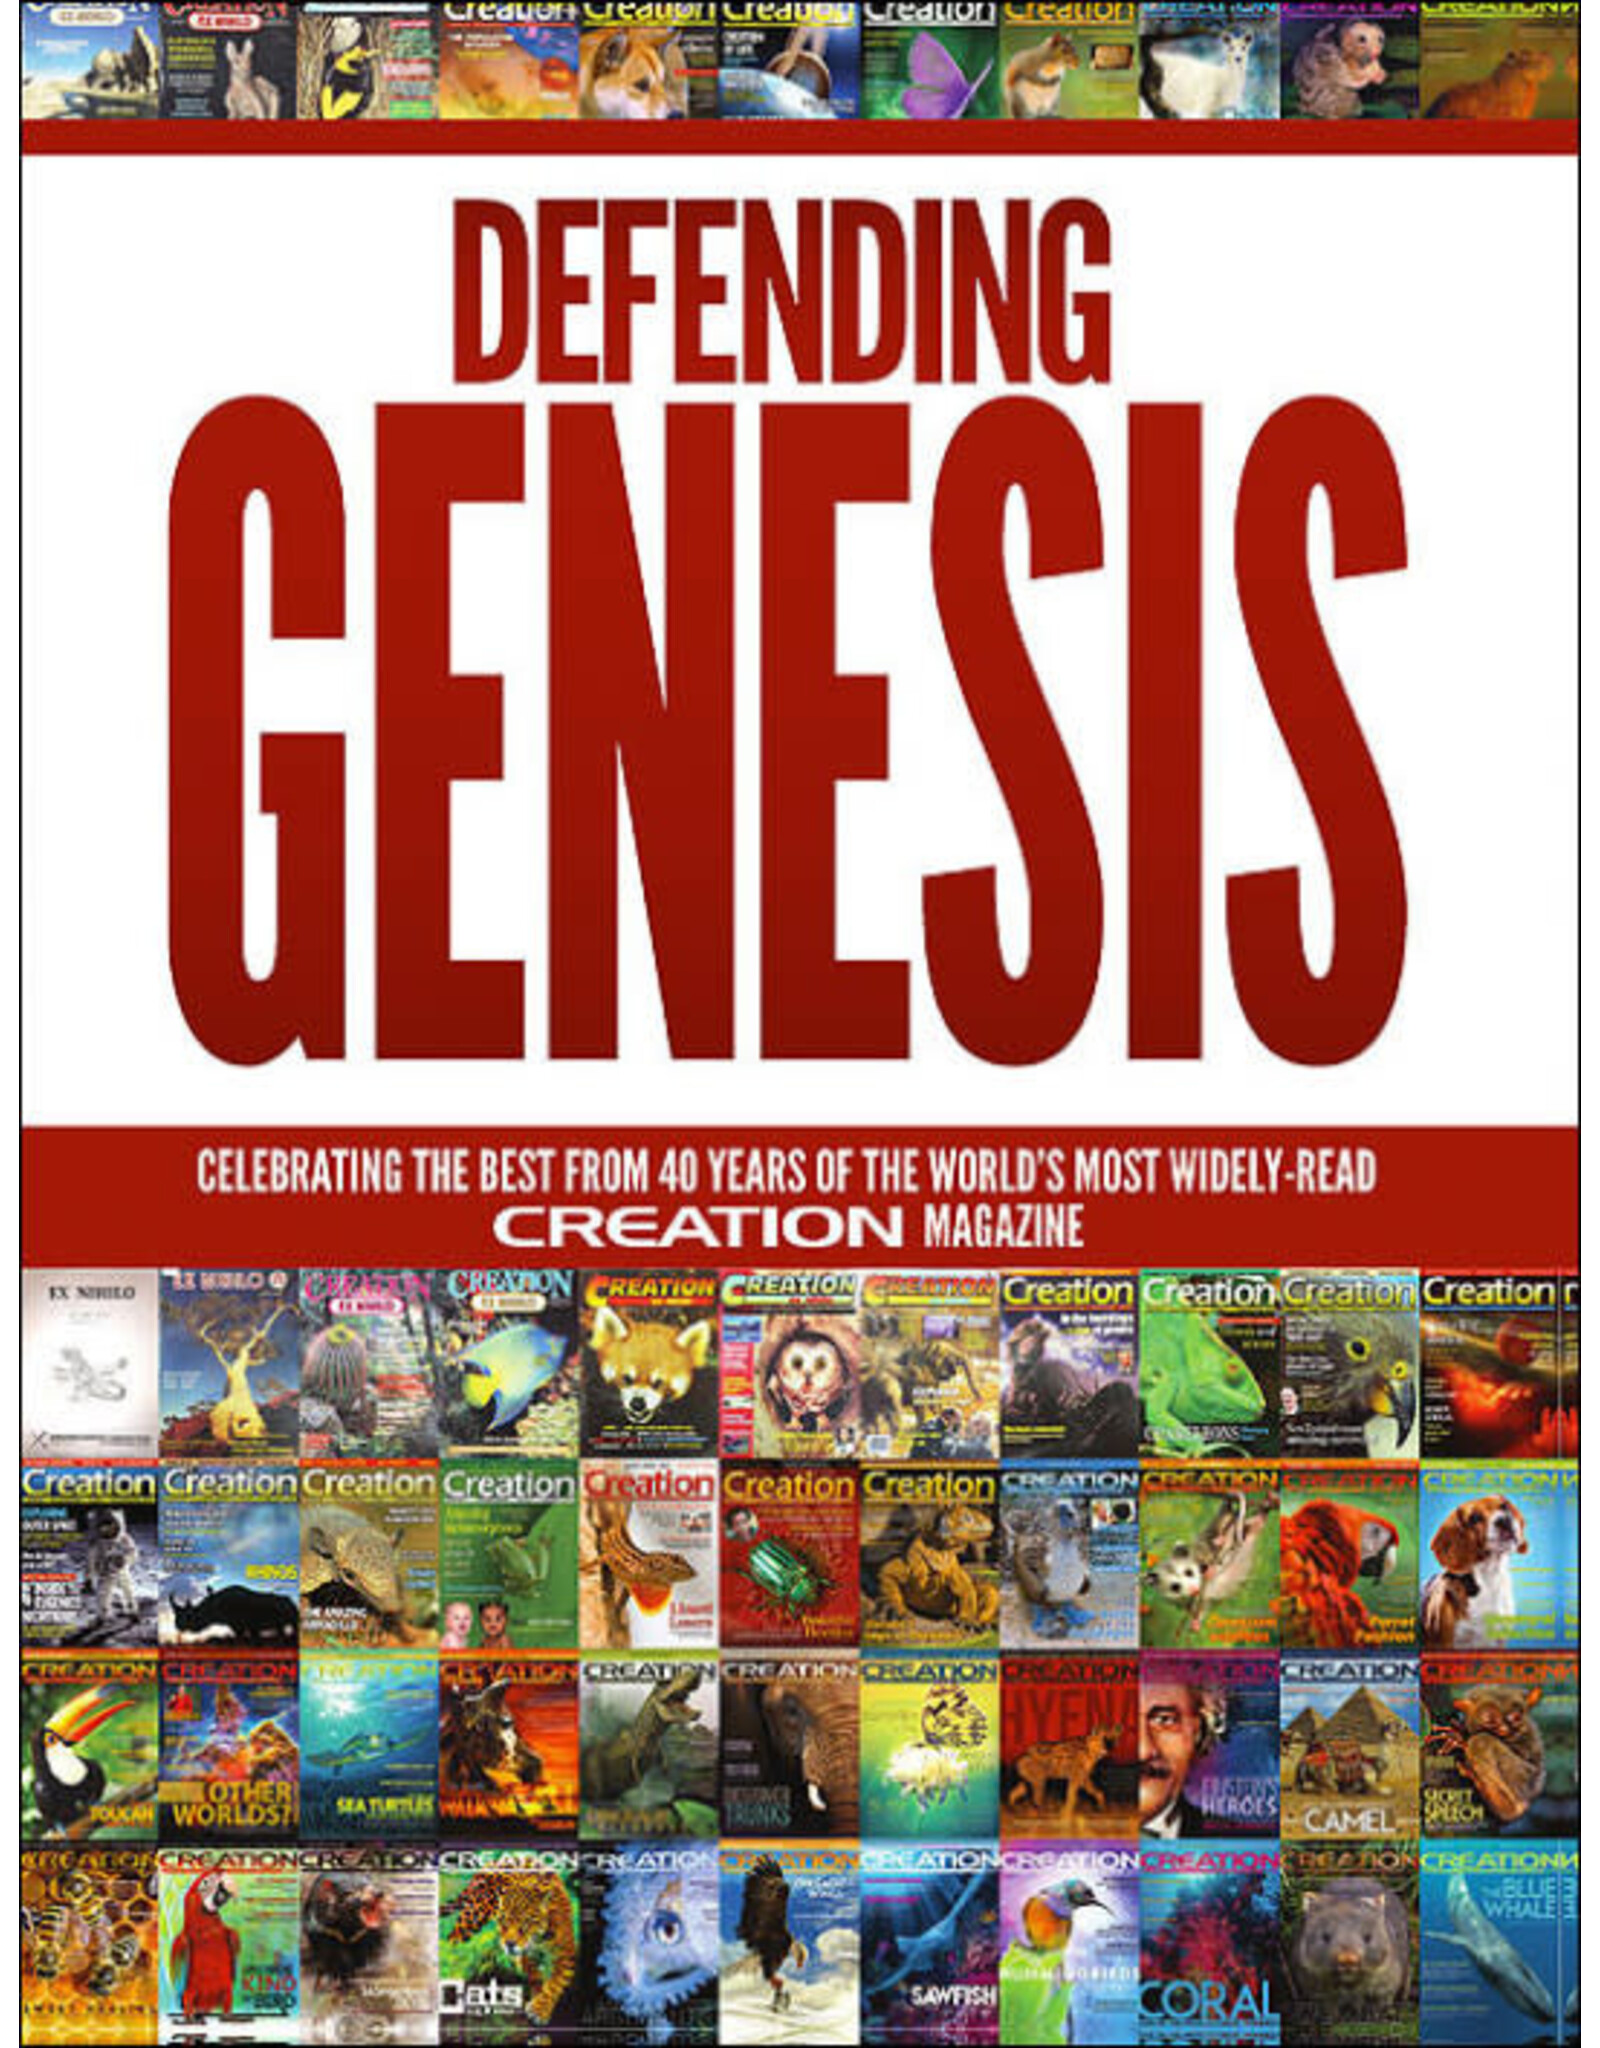 Defending Genesis